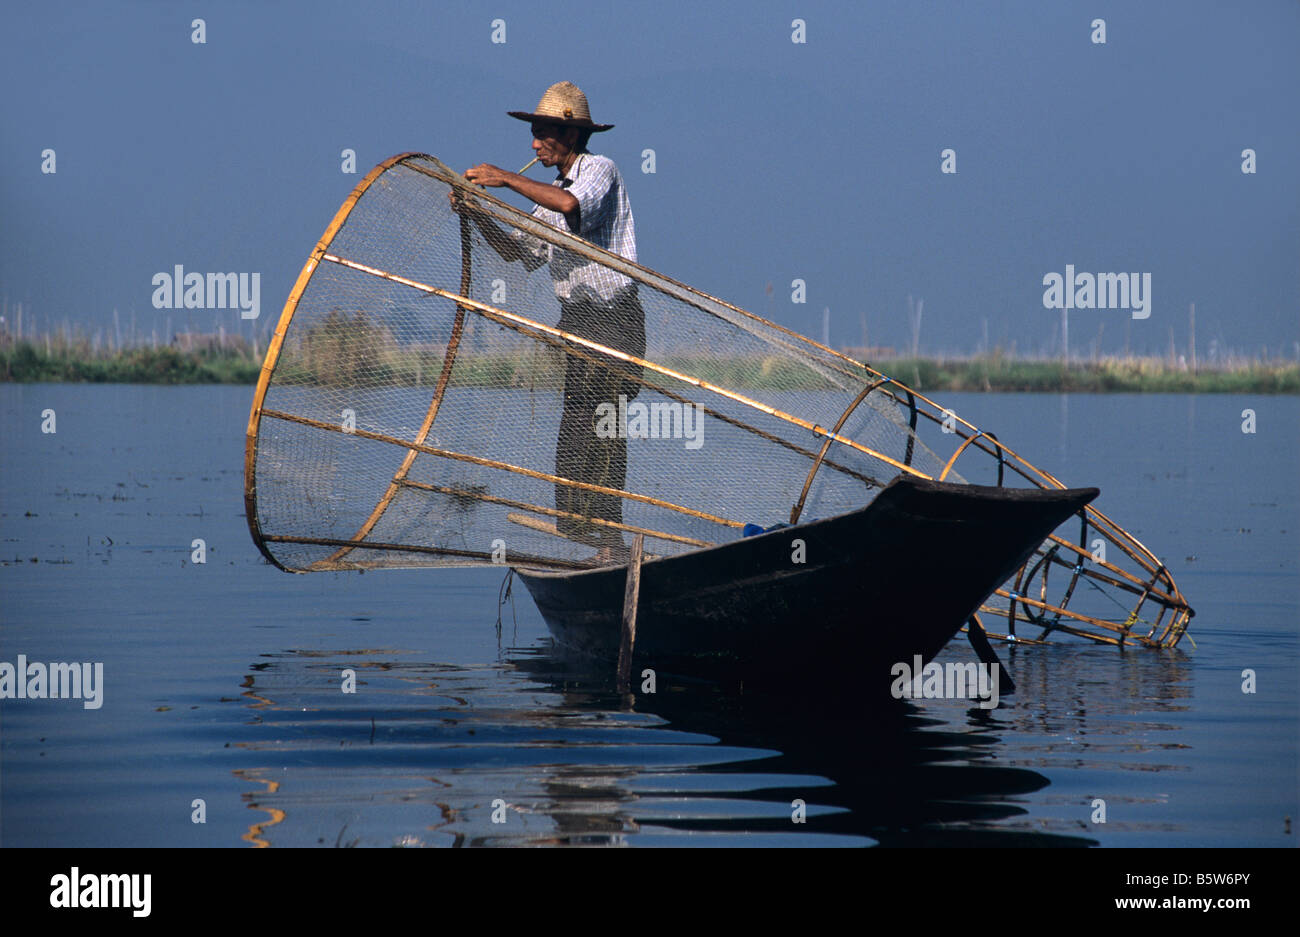 Ein Intha Bein Rudern Fischer mit seinem Boot und Cone-Shaped Net am Inle-See, Burma bzw. Myanmar Stockfoto